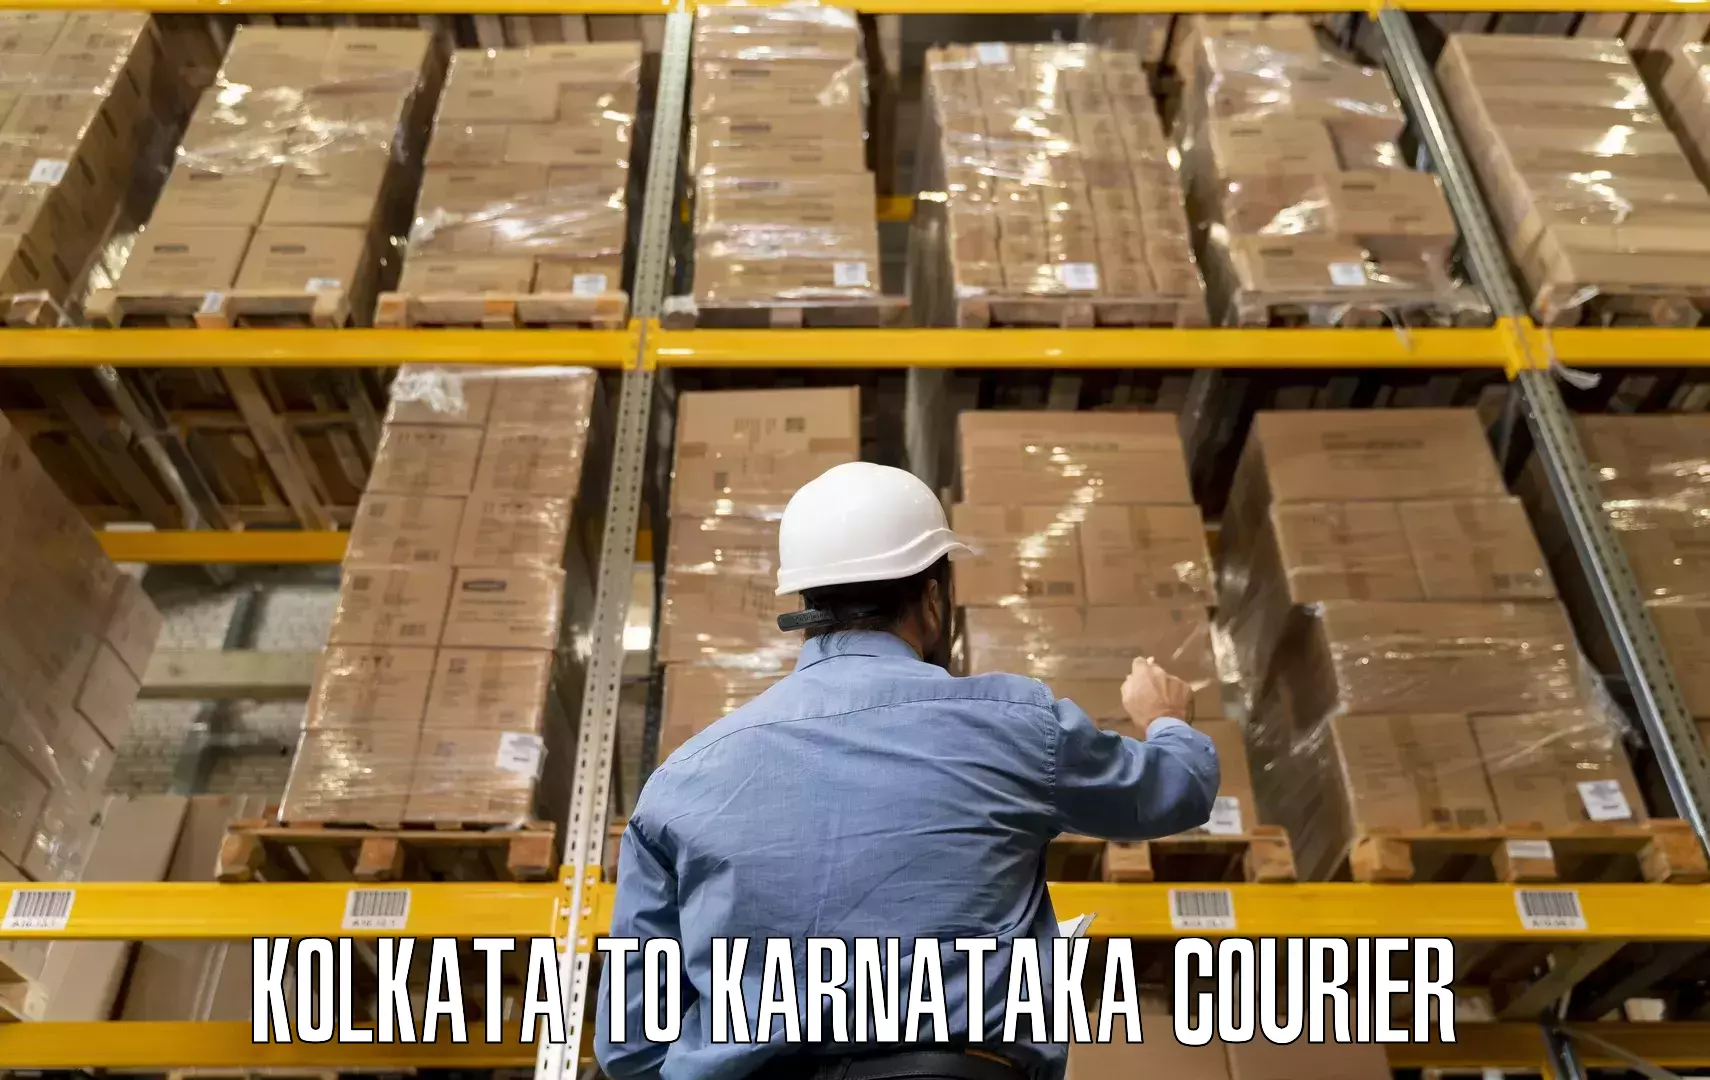 Moving and packing experts Kolkata to Kanakapura